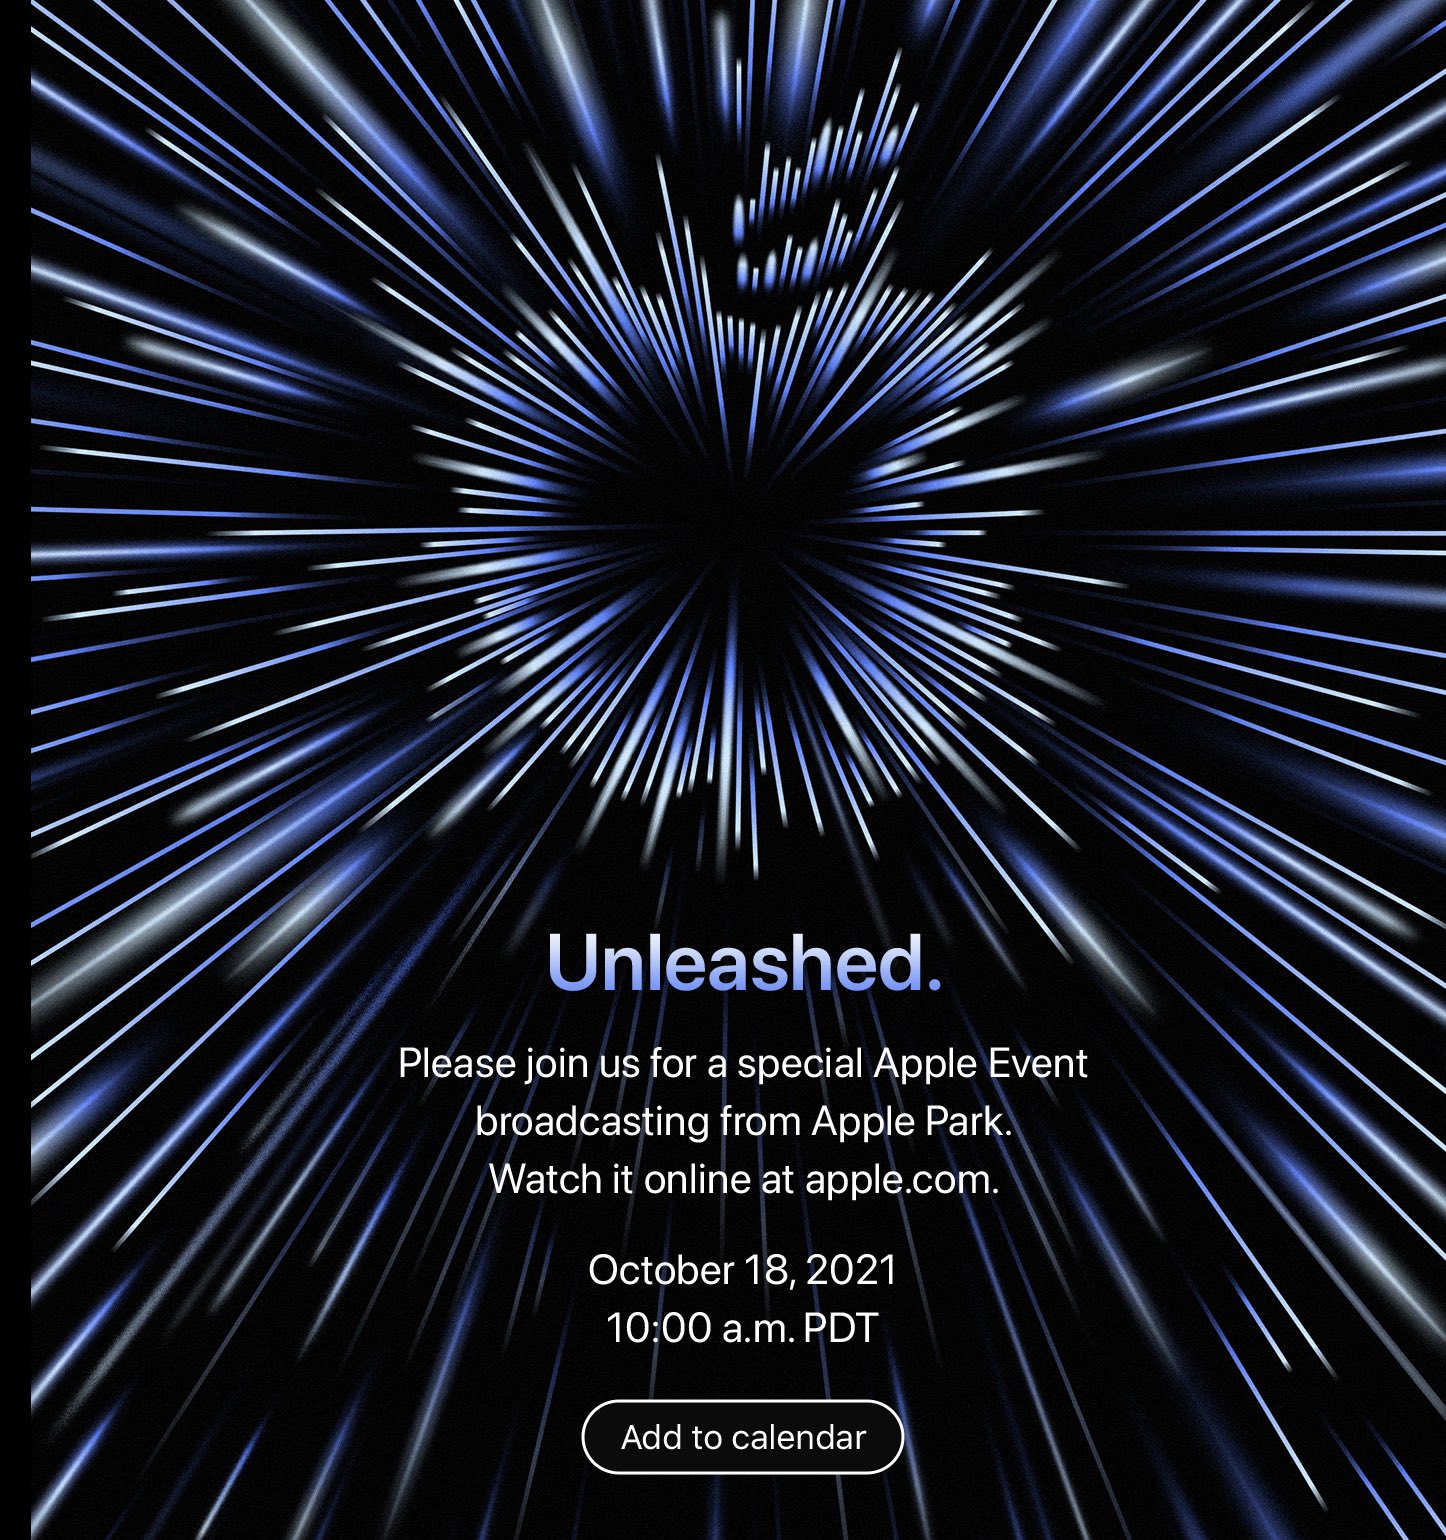 Apple Announces “Unleashed” Event